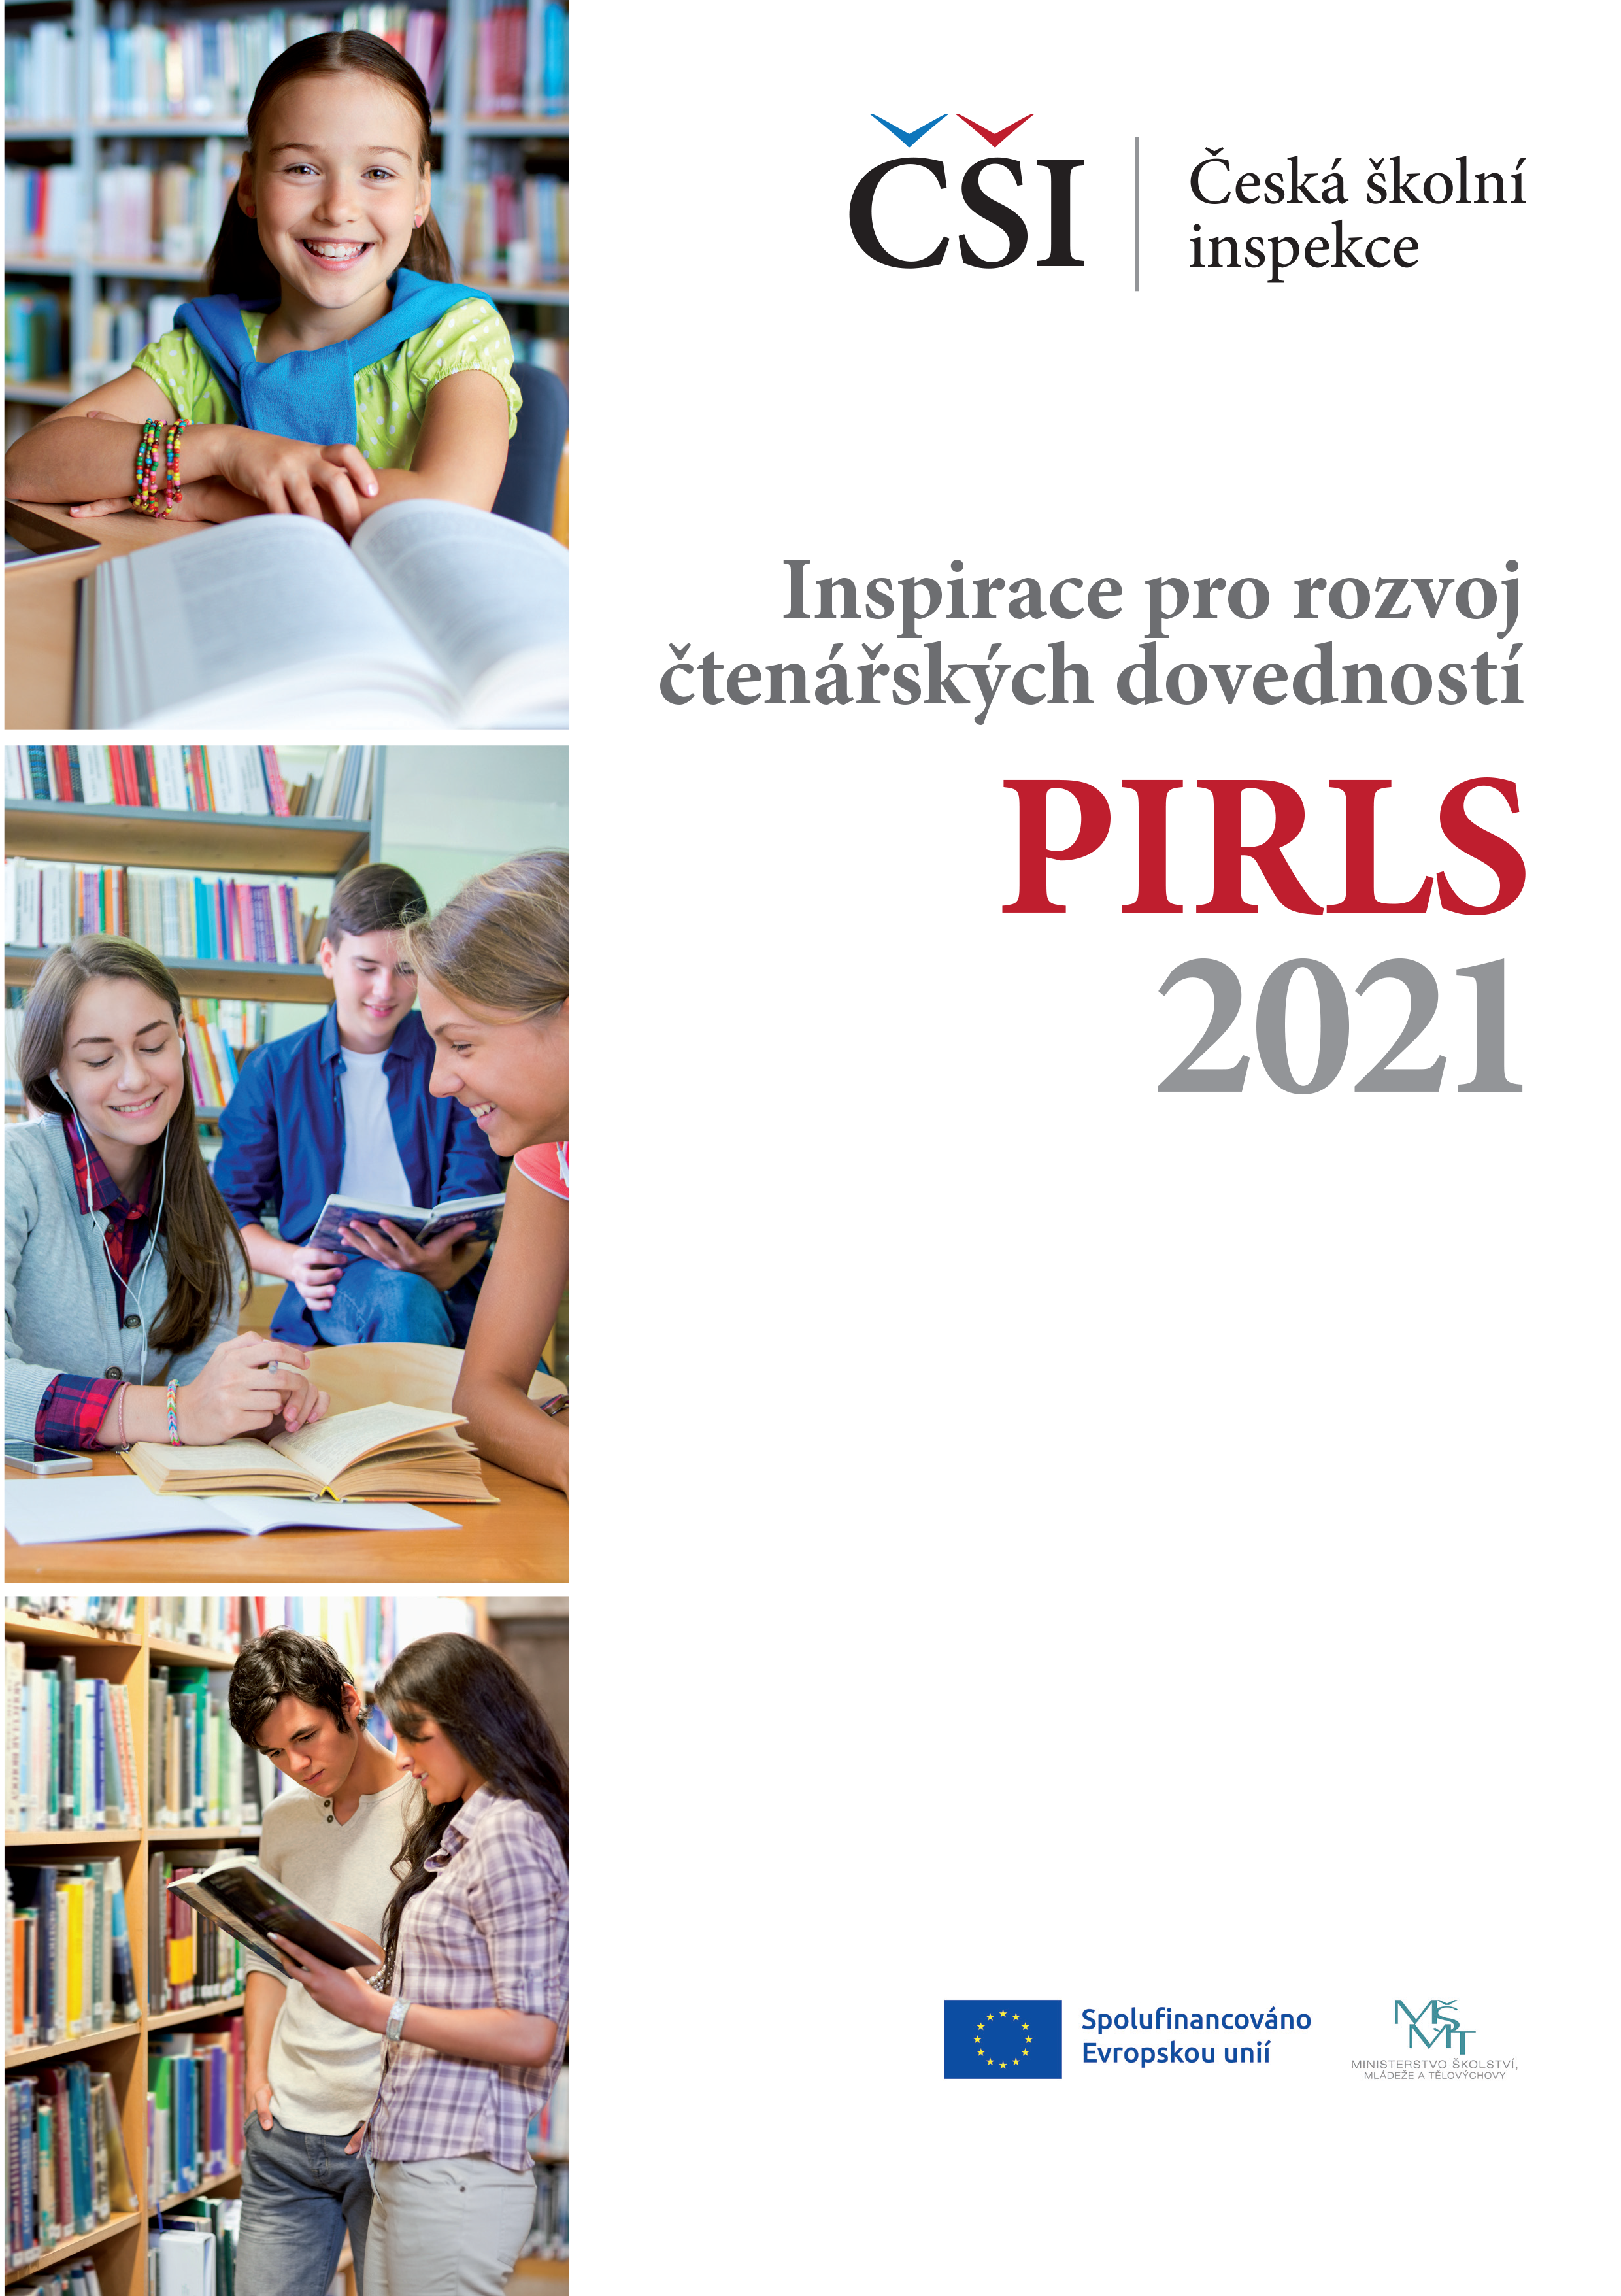 PIRLS 2021: Inspirace pro rozvoj čtenářských dovedností